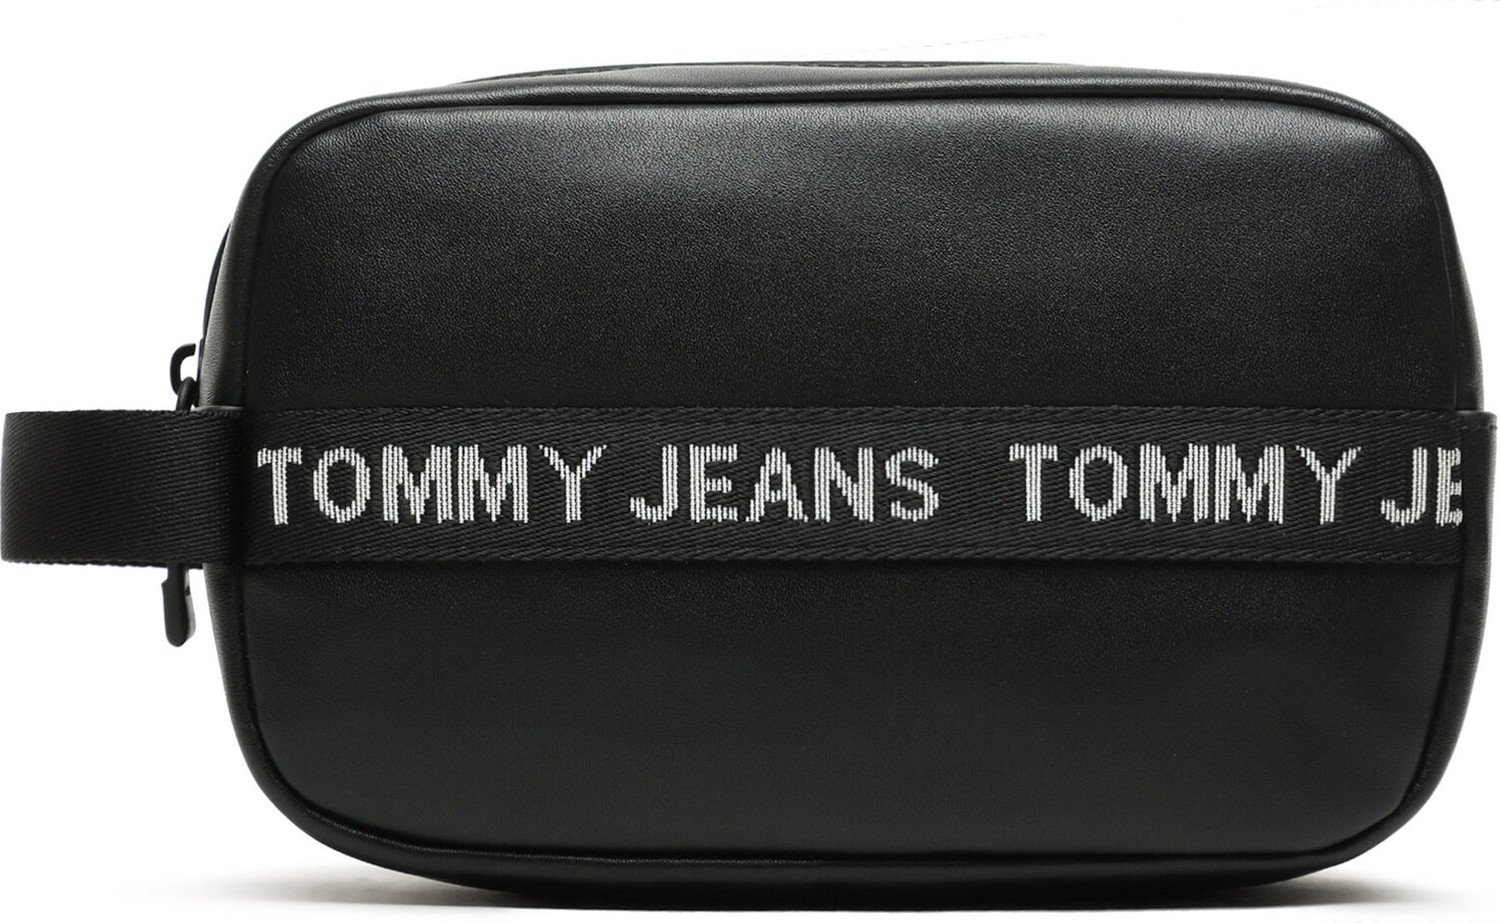 Kosmetický kufřík Tommy Jeans Tjm Essential Leather Washbag AM0AM11425 BDS